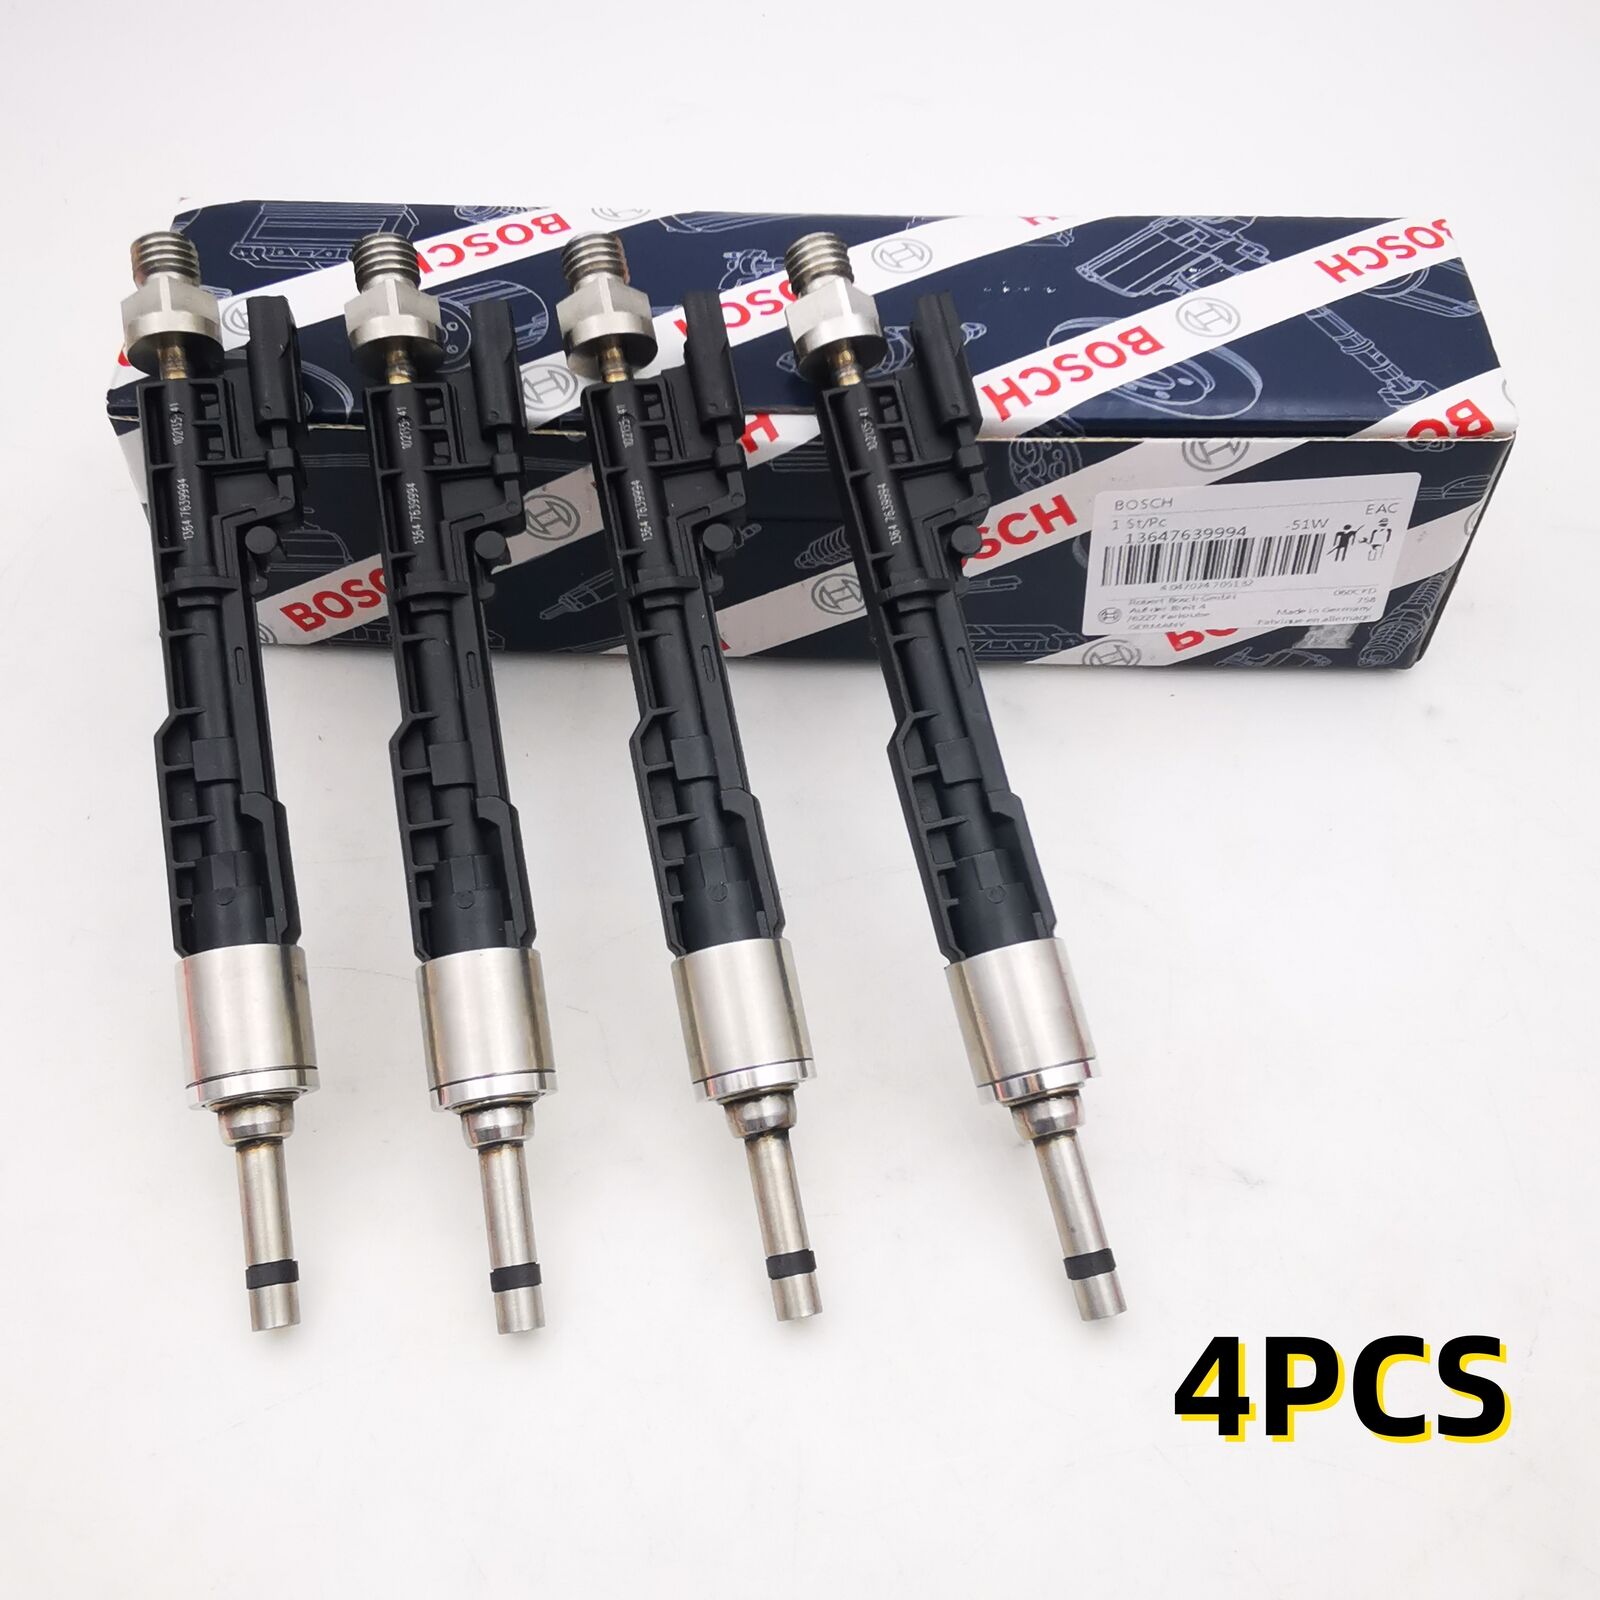 4PCS Fuel Injectors Fits For BMW X1 X3 X5 X6 Z4 228i 328i 320i BOSCH 13647639994